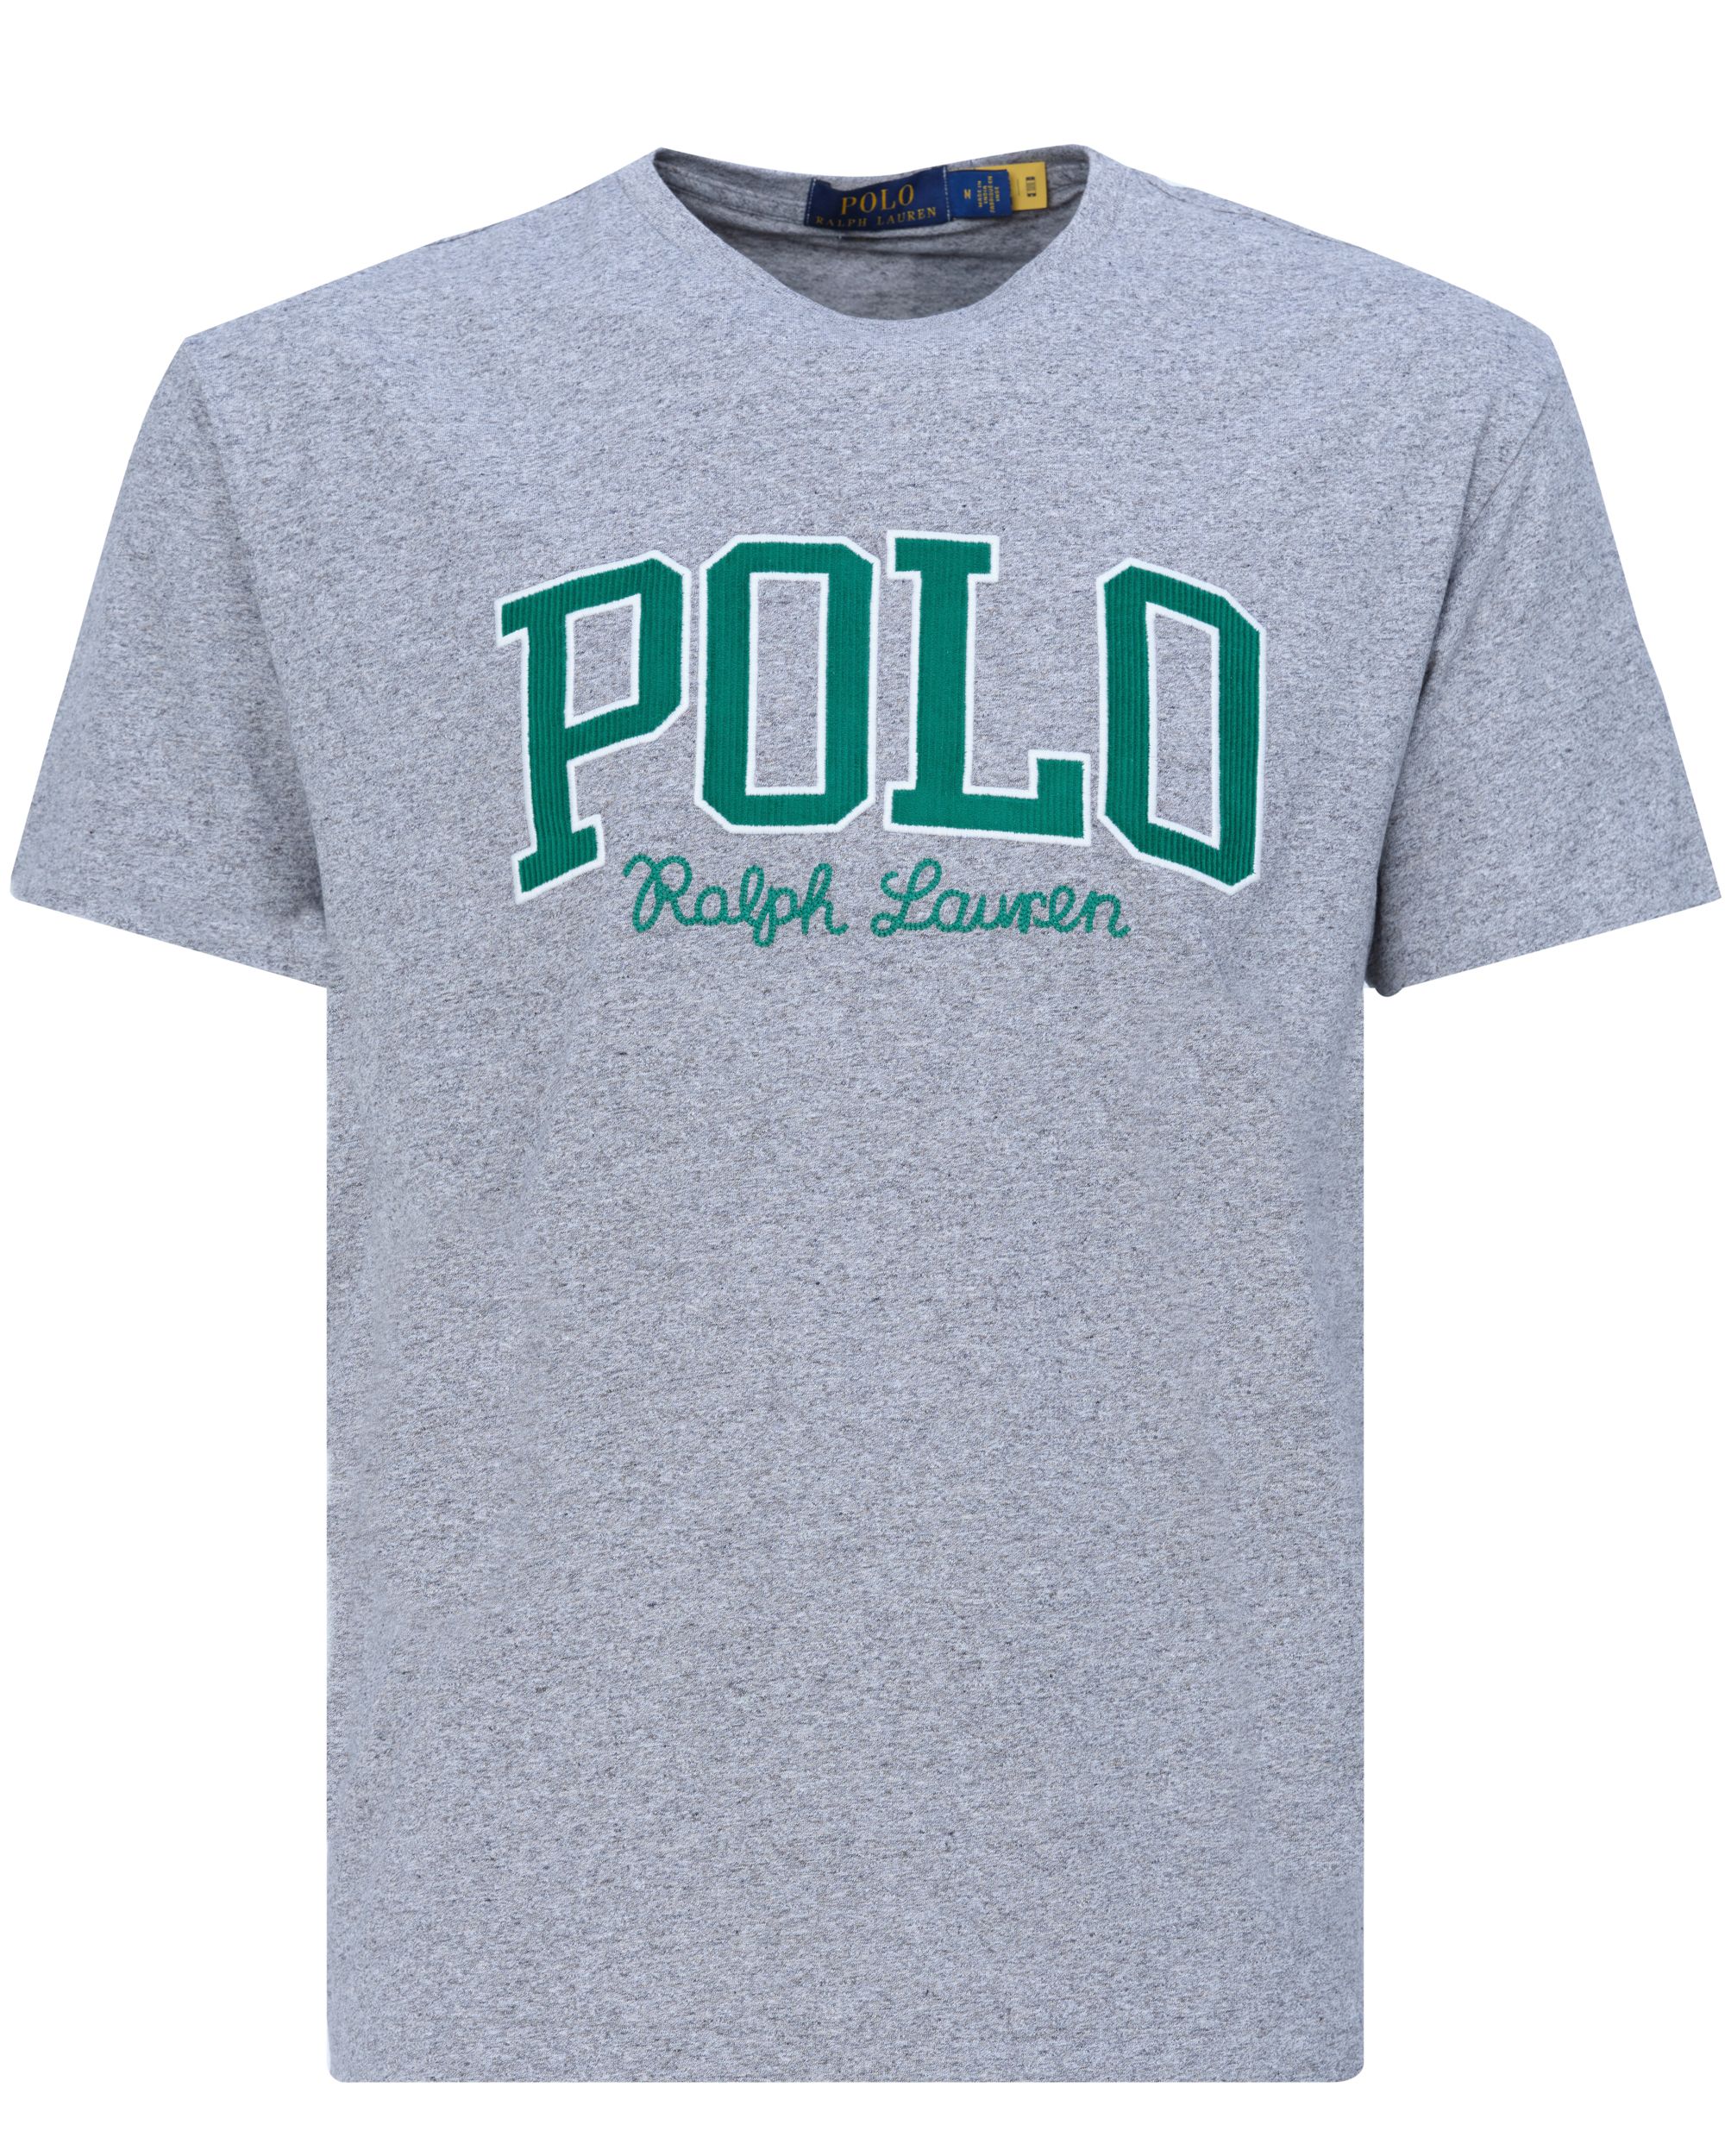 Polo Ralph Lauren - T-shirt KM Grijs 080617-001-L